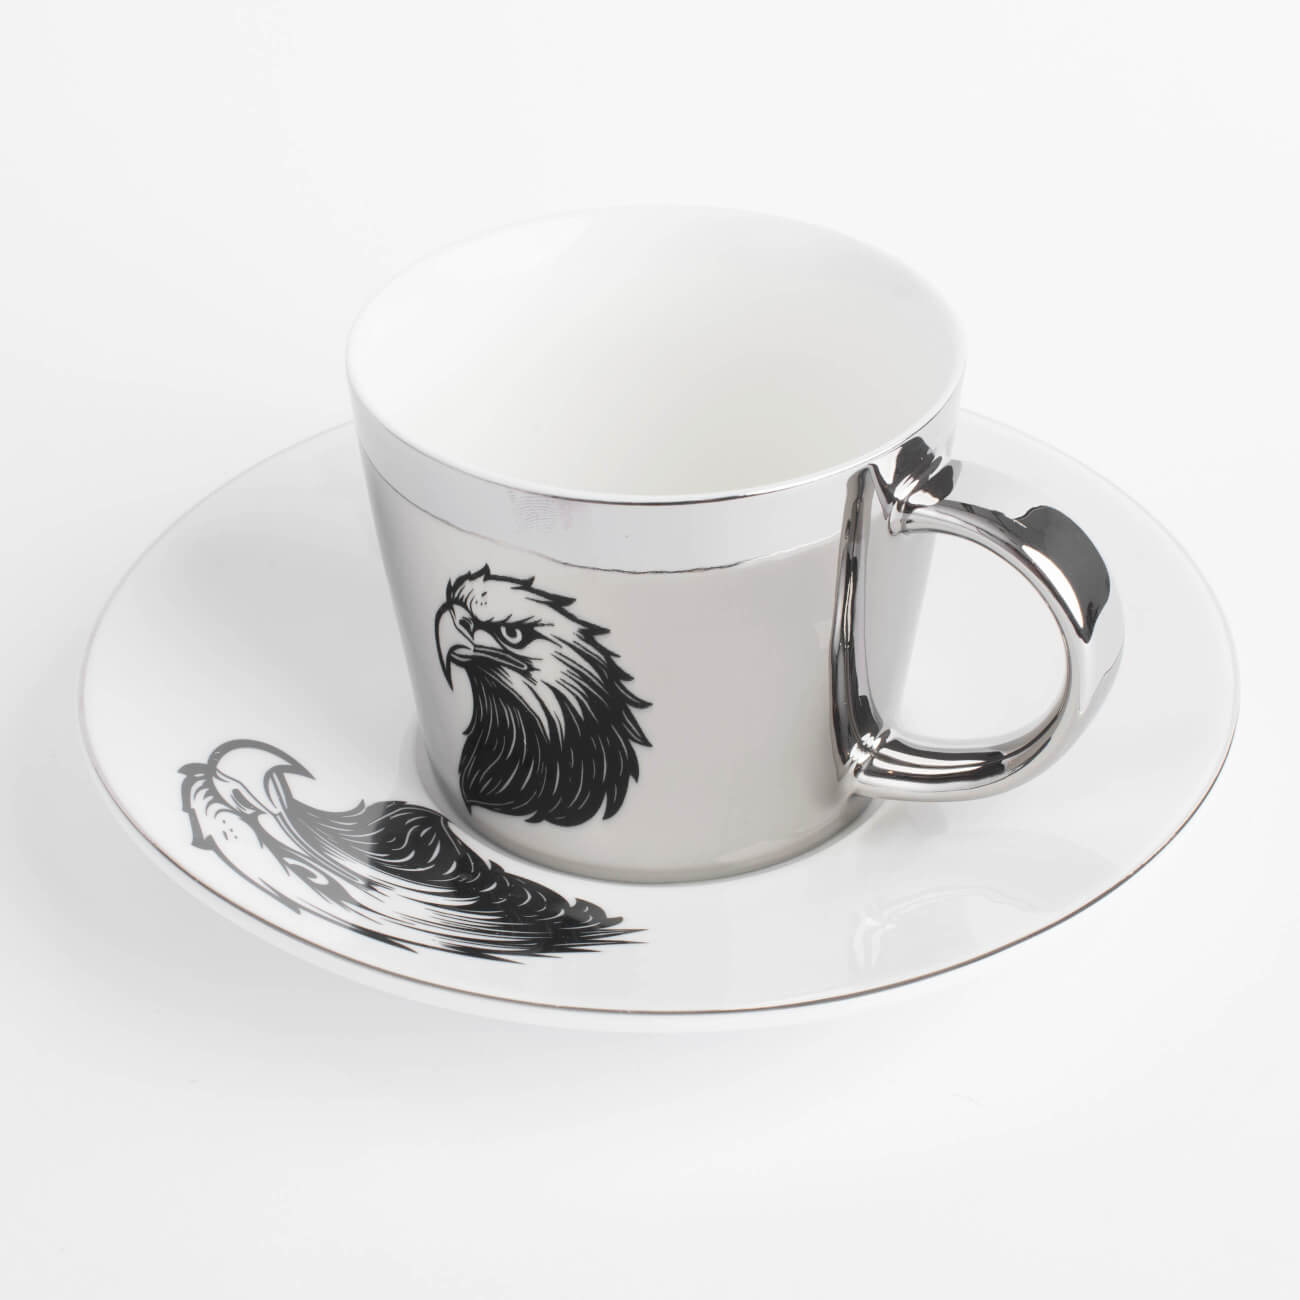 Пара чайная, 1 перс, 2 пр, 230 мл, фарфор P, бело-серебристая, Орел, Eagle изображение № 1